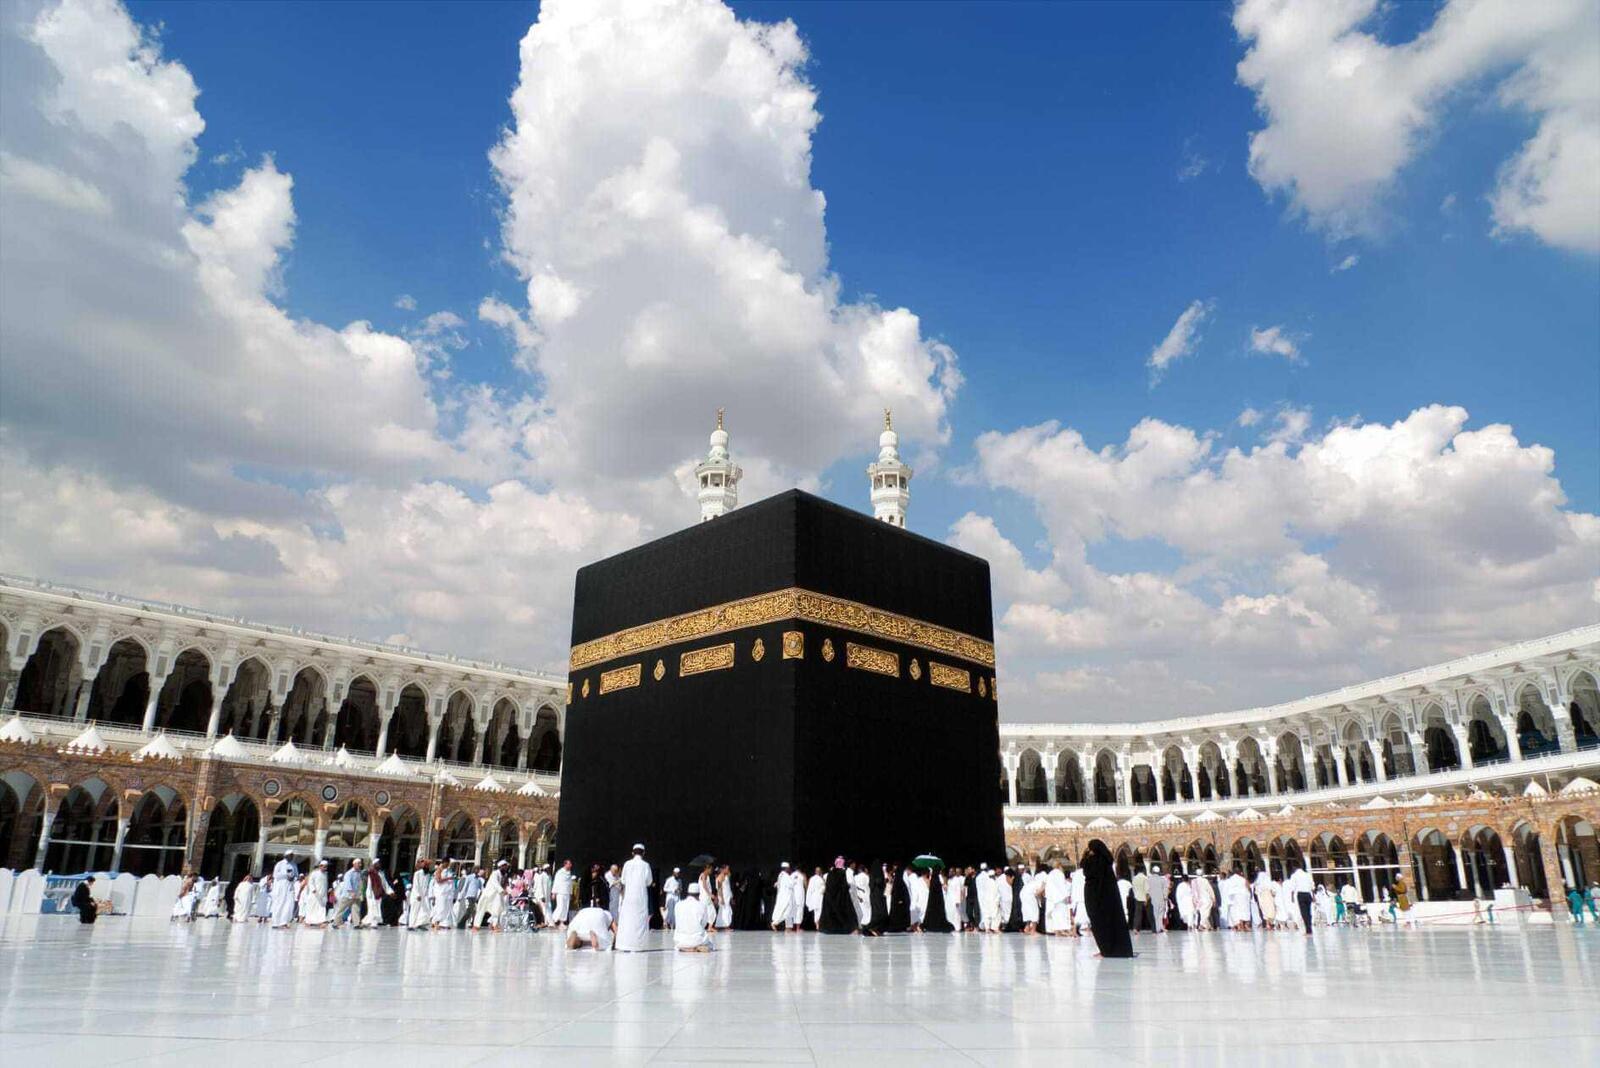 ការមើលឃើញ Kaaba នៅក្នុងសុបិនសម្រាប់ស្ត្រីរៀបការ ស្ត្រីនៅលីវ ឬស្ត្រីលែងលះ - ការបកស្រាយសុបិនតាមអ៊ីនធឺណិត